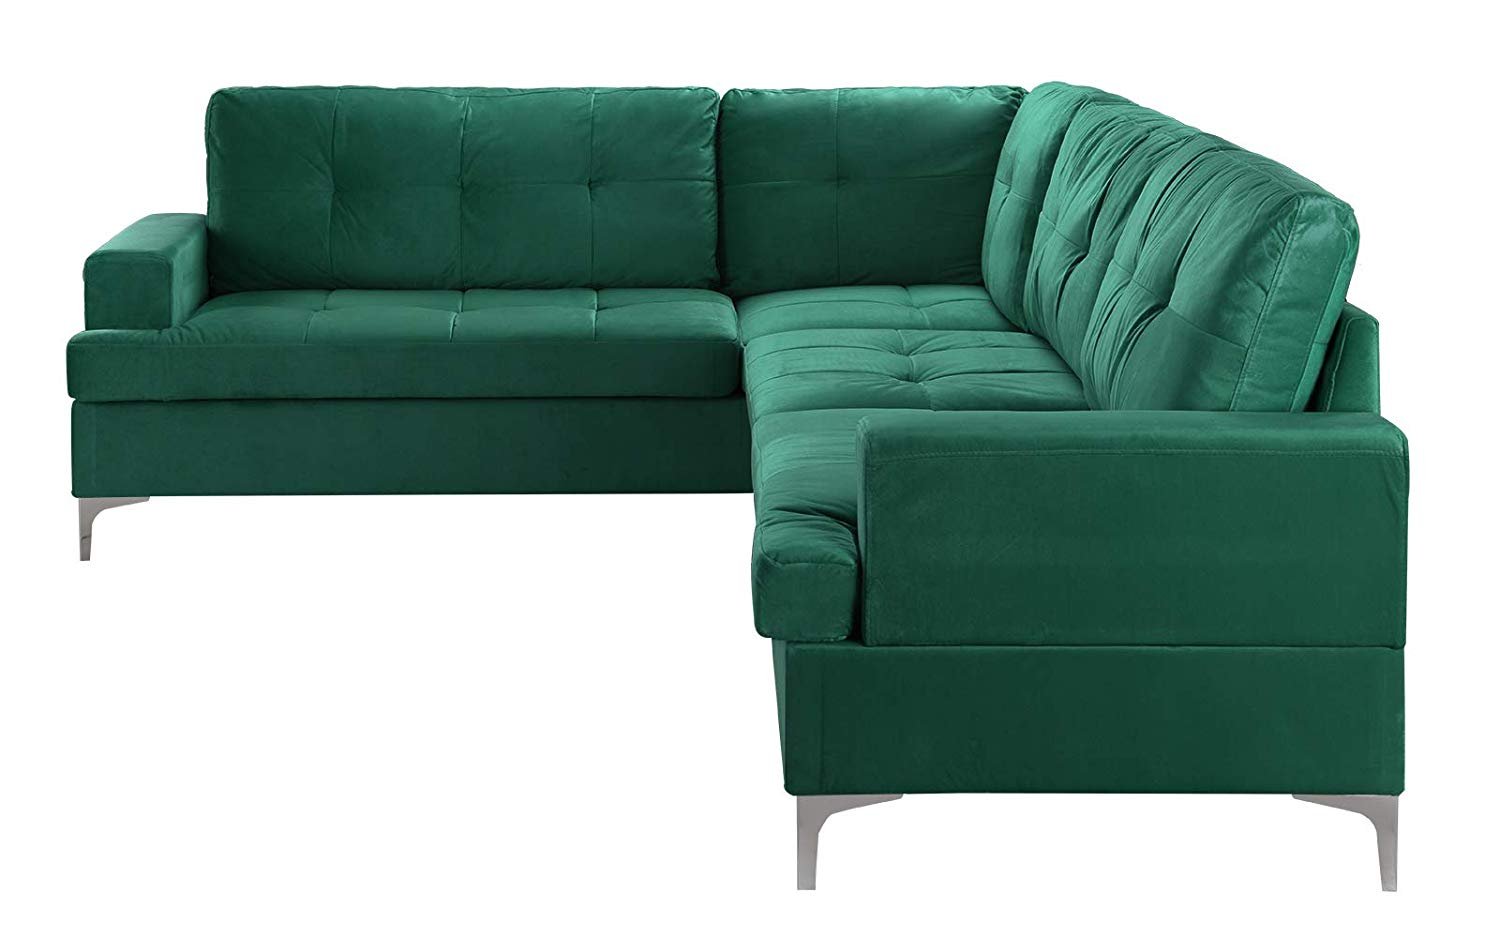 Large Tufted Velvet Sectional Sofa, Living Room L-Shape Modern Couch